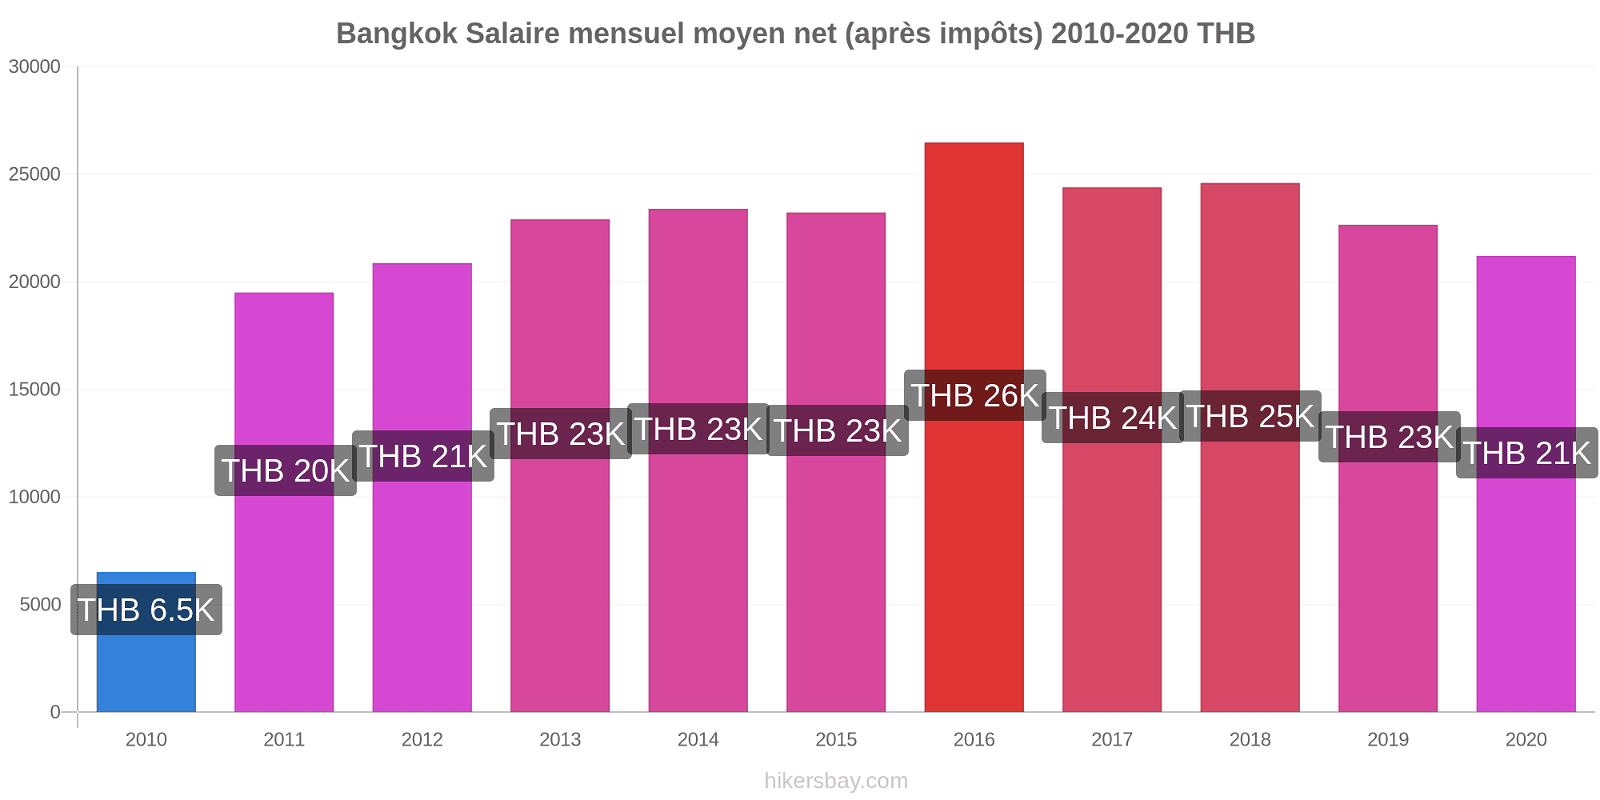 Bangkok changements de prix Salaire mensuel Net (après impôts) hikersbay.com